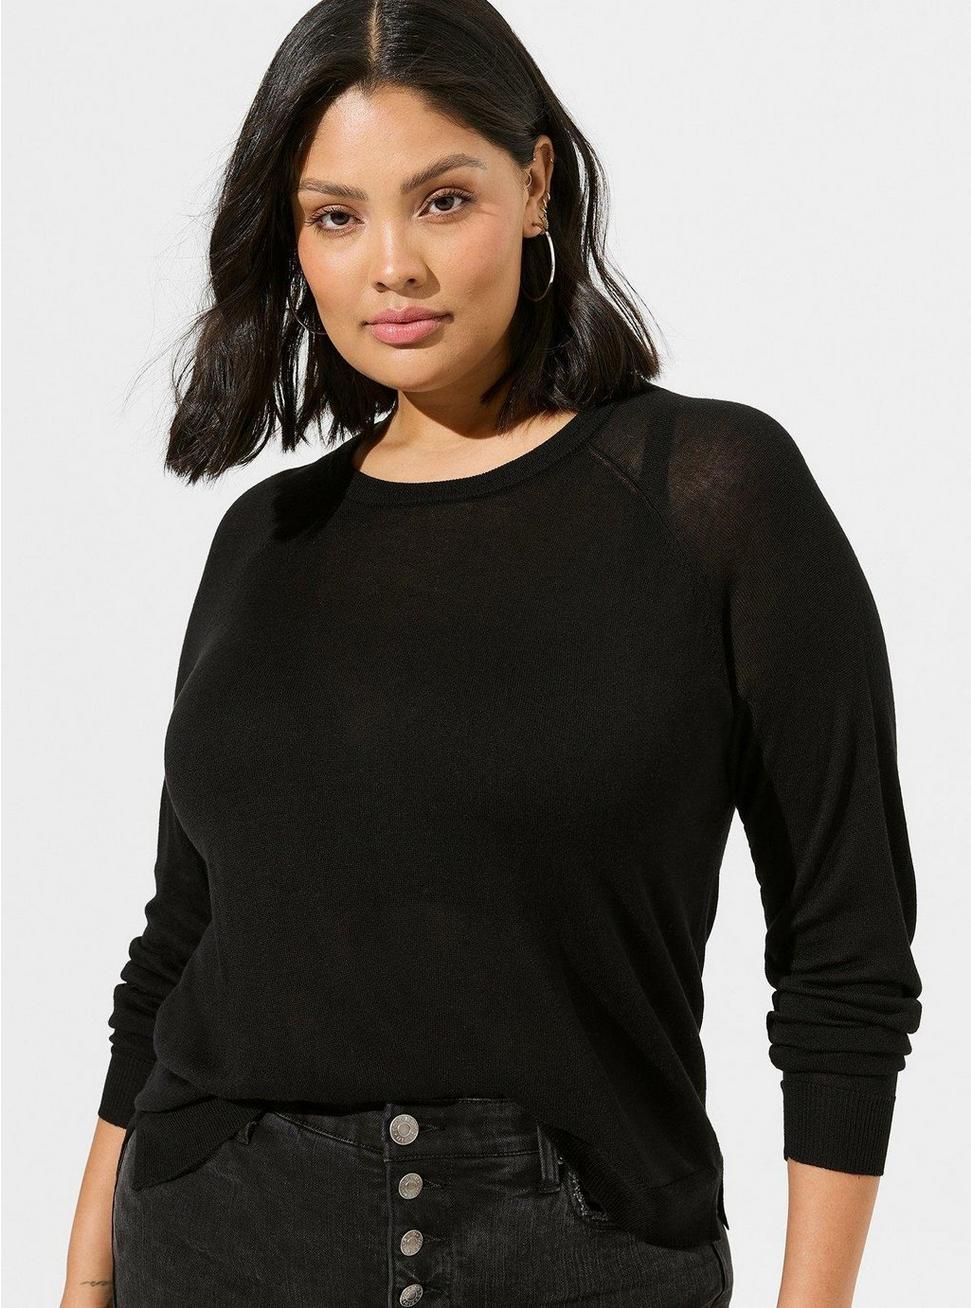 Tissue Weight Pullover Raglan Crop Sweater, DEEP BLACK, hi-res